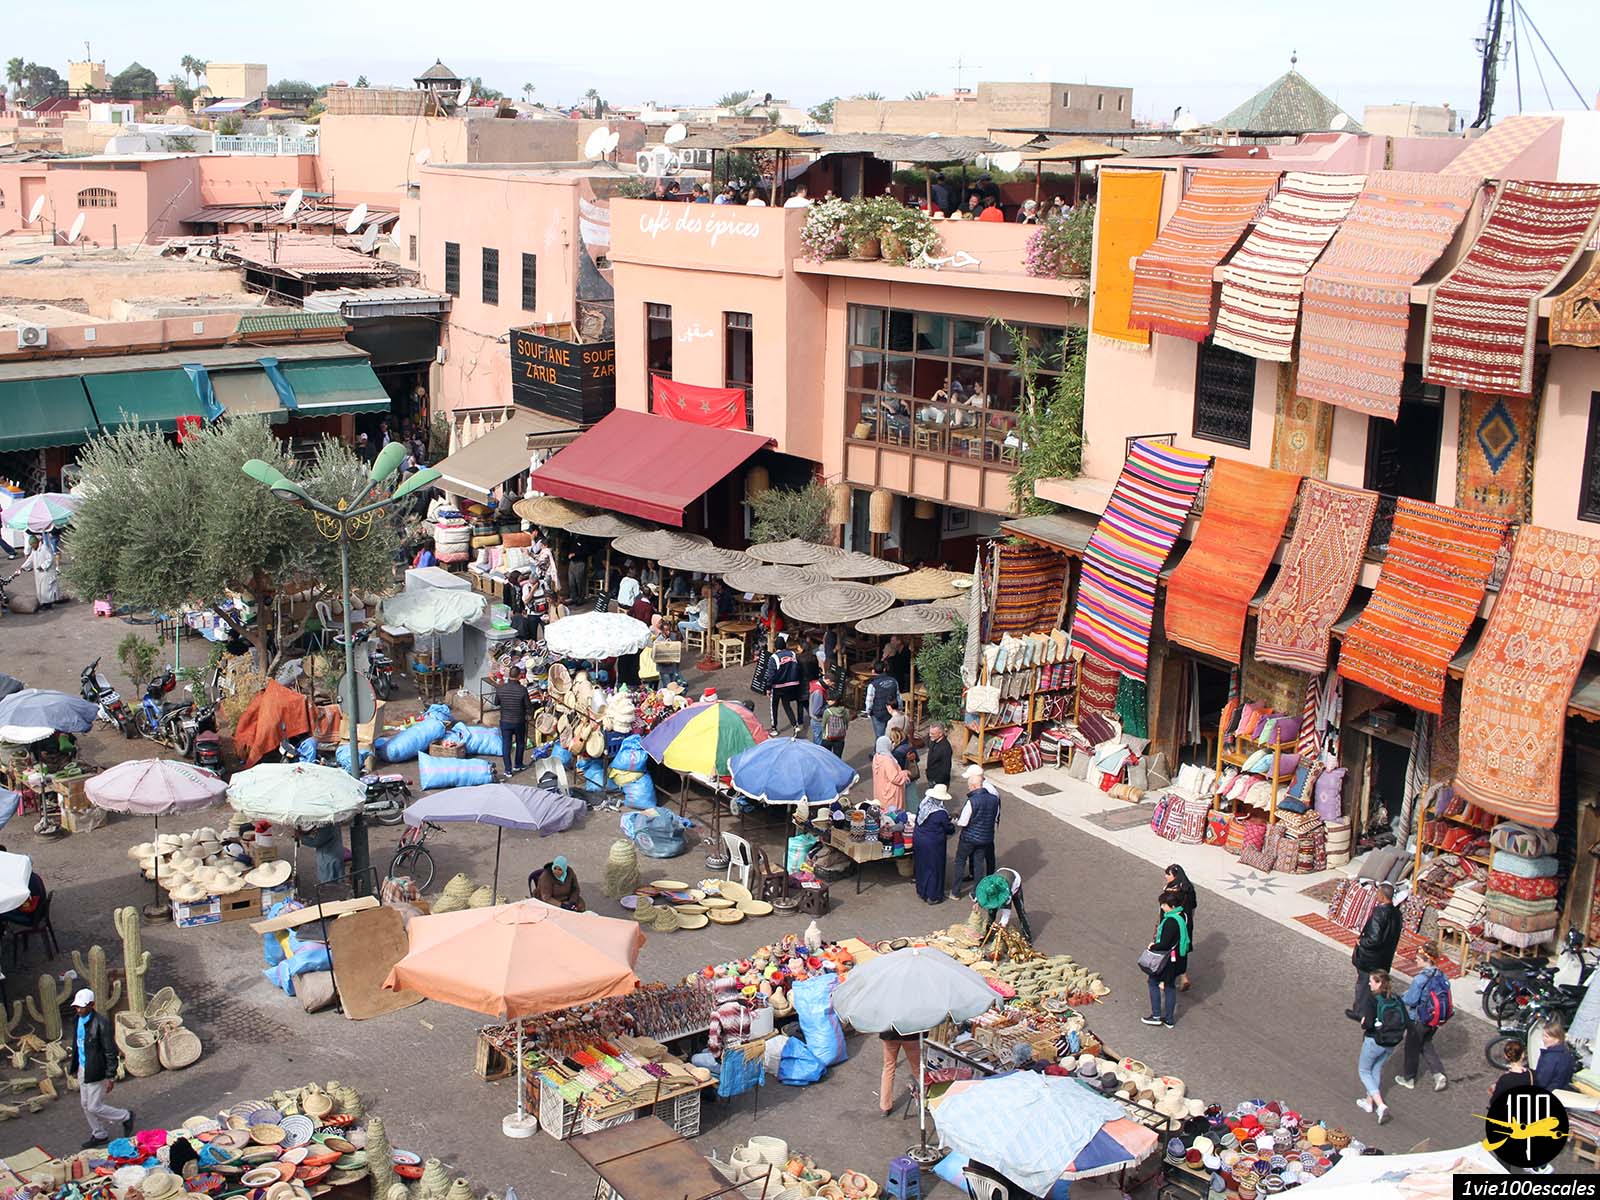 La magnifique place des épices de Marrakech avec ses vendeurs de tapis